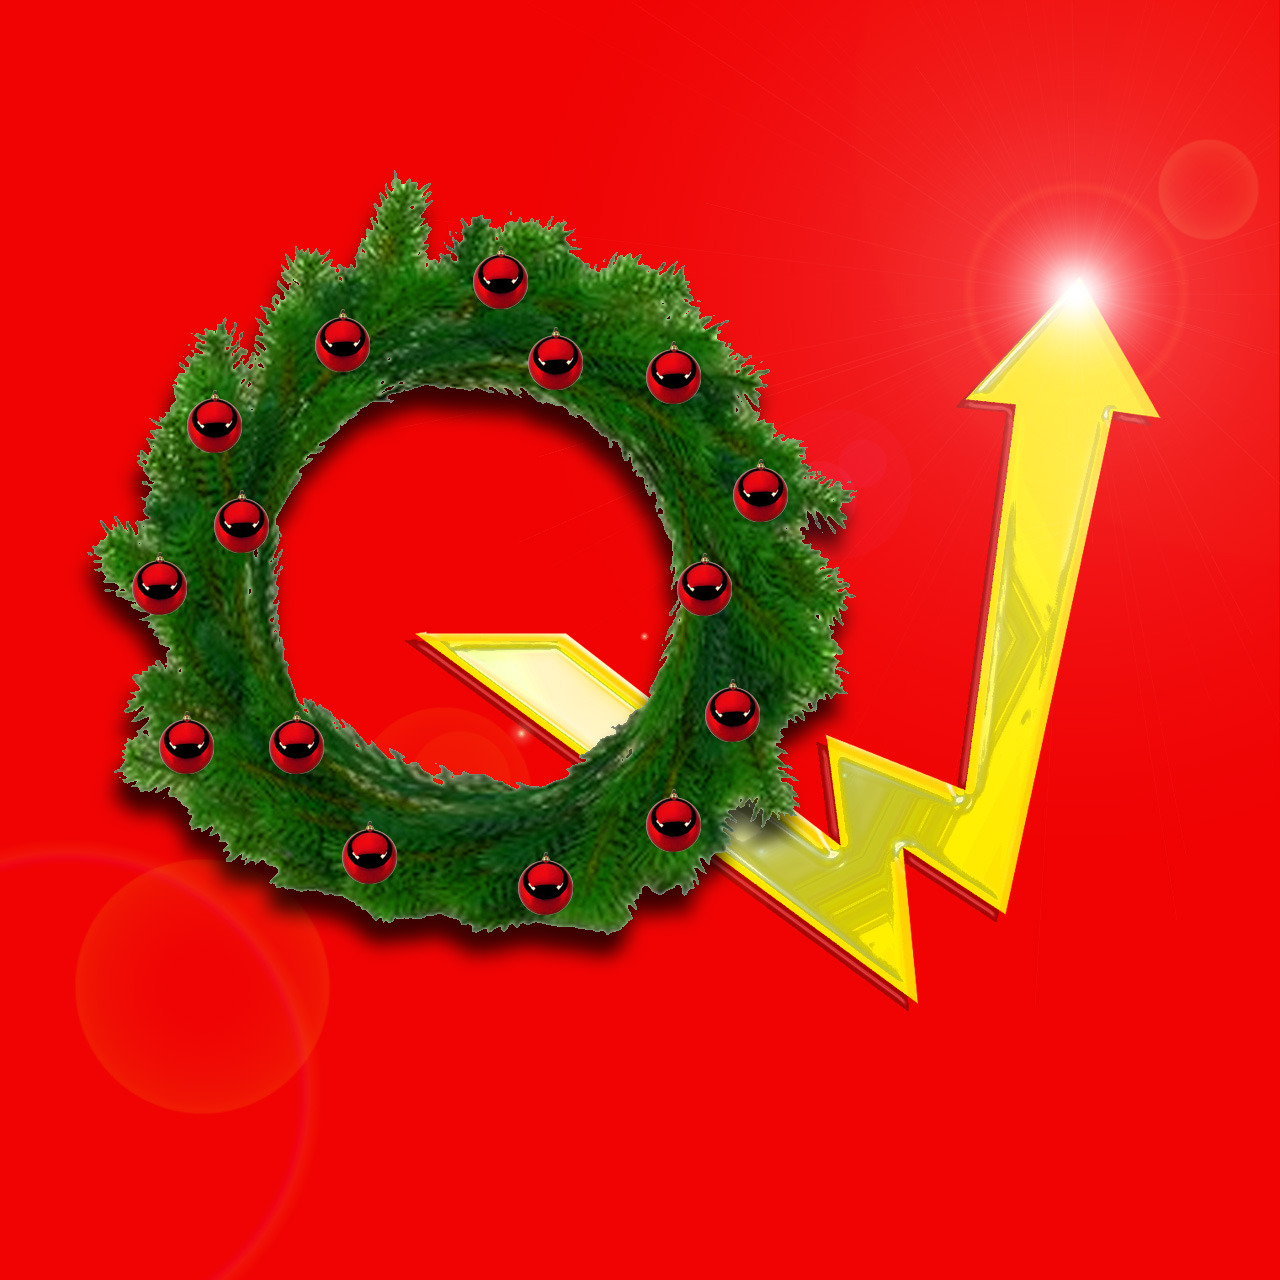 Sur fond rouge, une couronne de Noël [cercle vert, comme des branches de sapin] et une flèche jaune indiquant une hausse, flèche qui rappelle le symbole d'Hydro-Québec